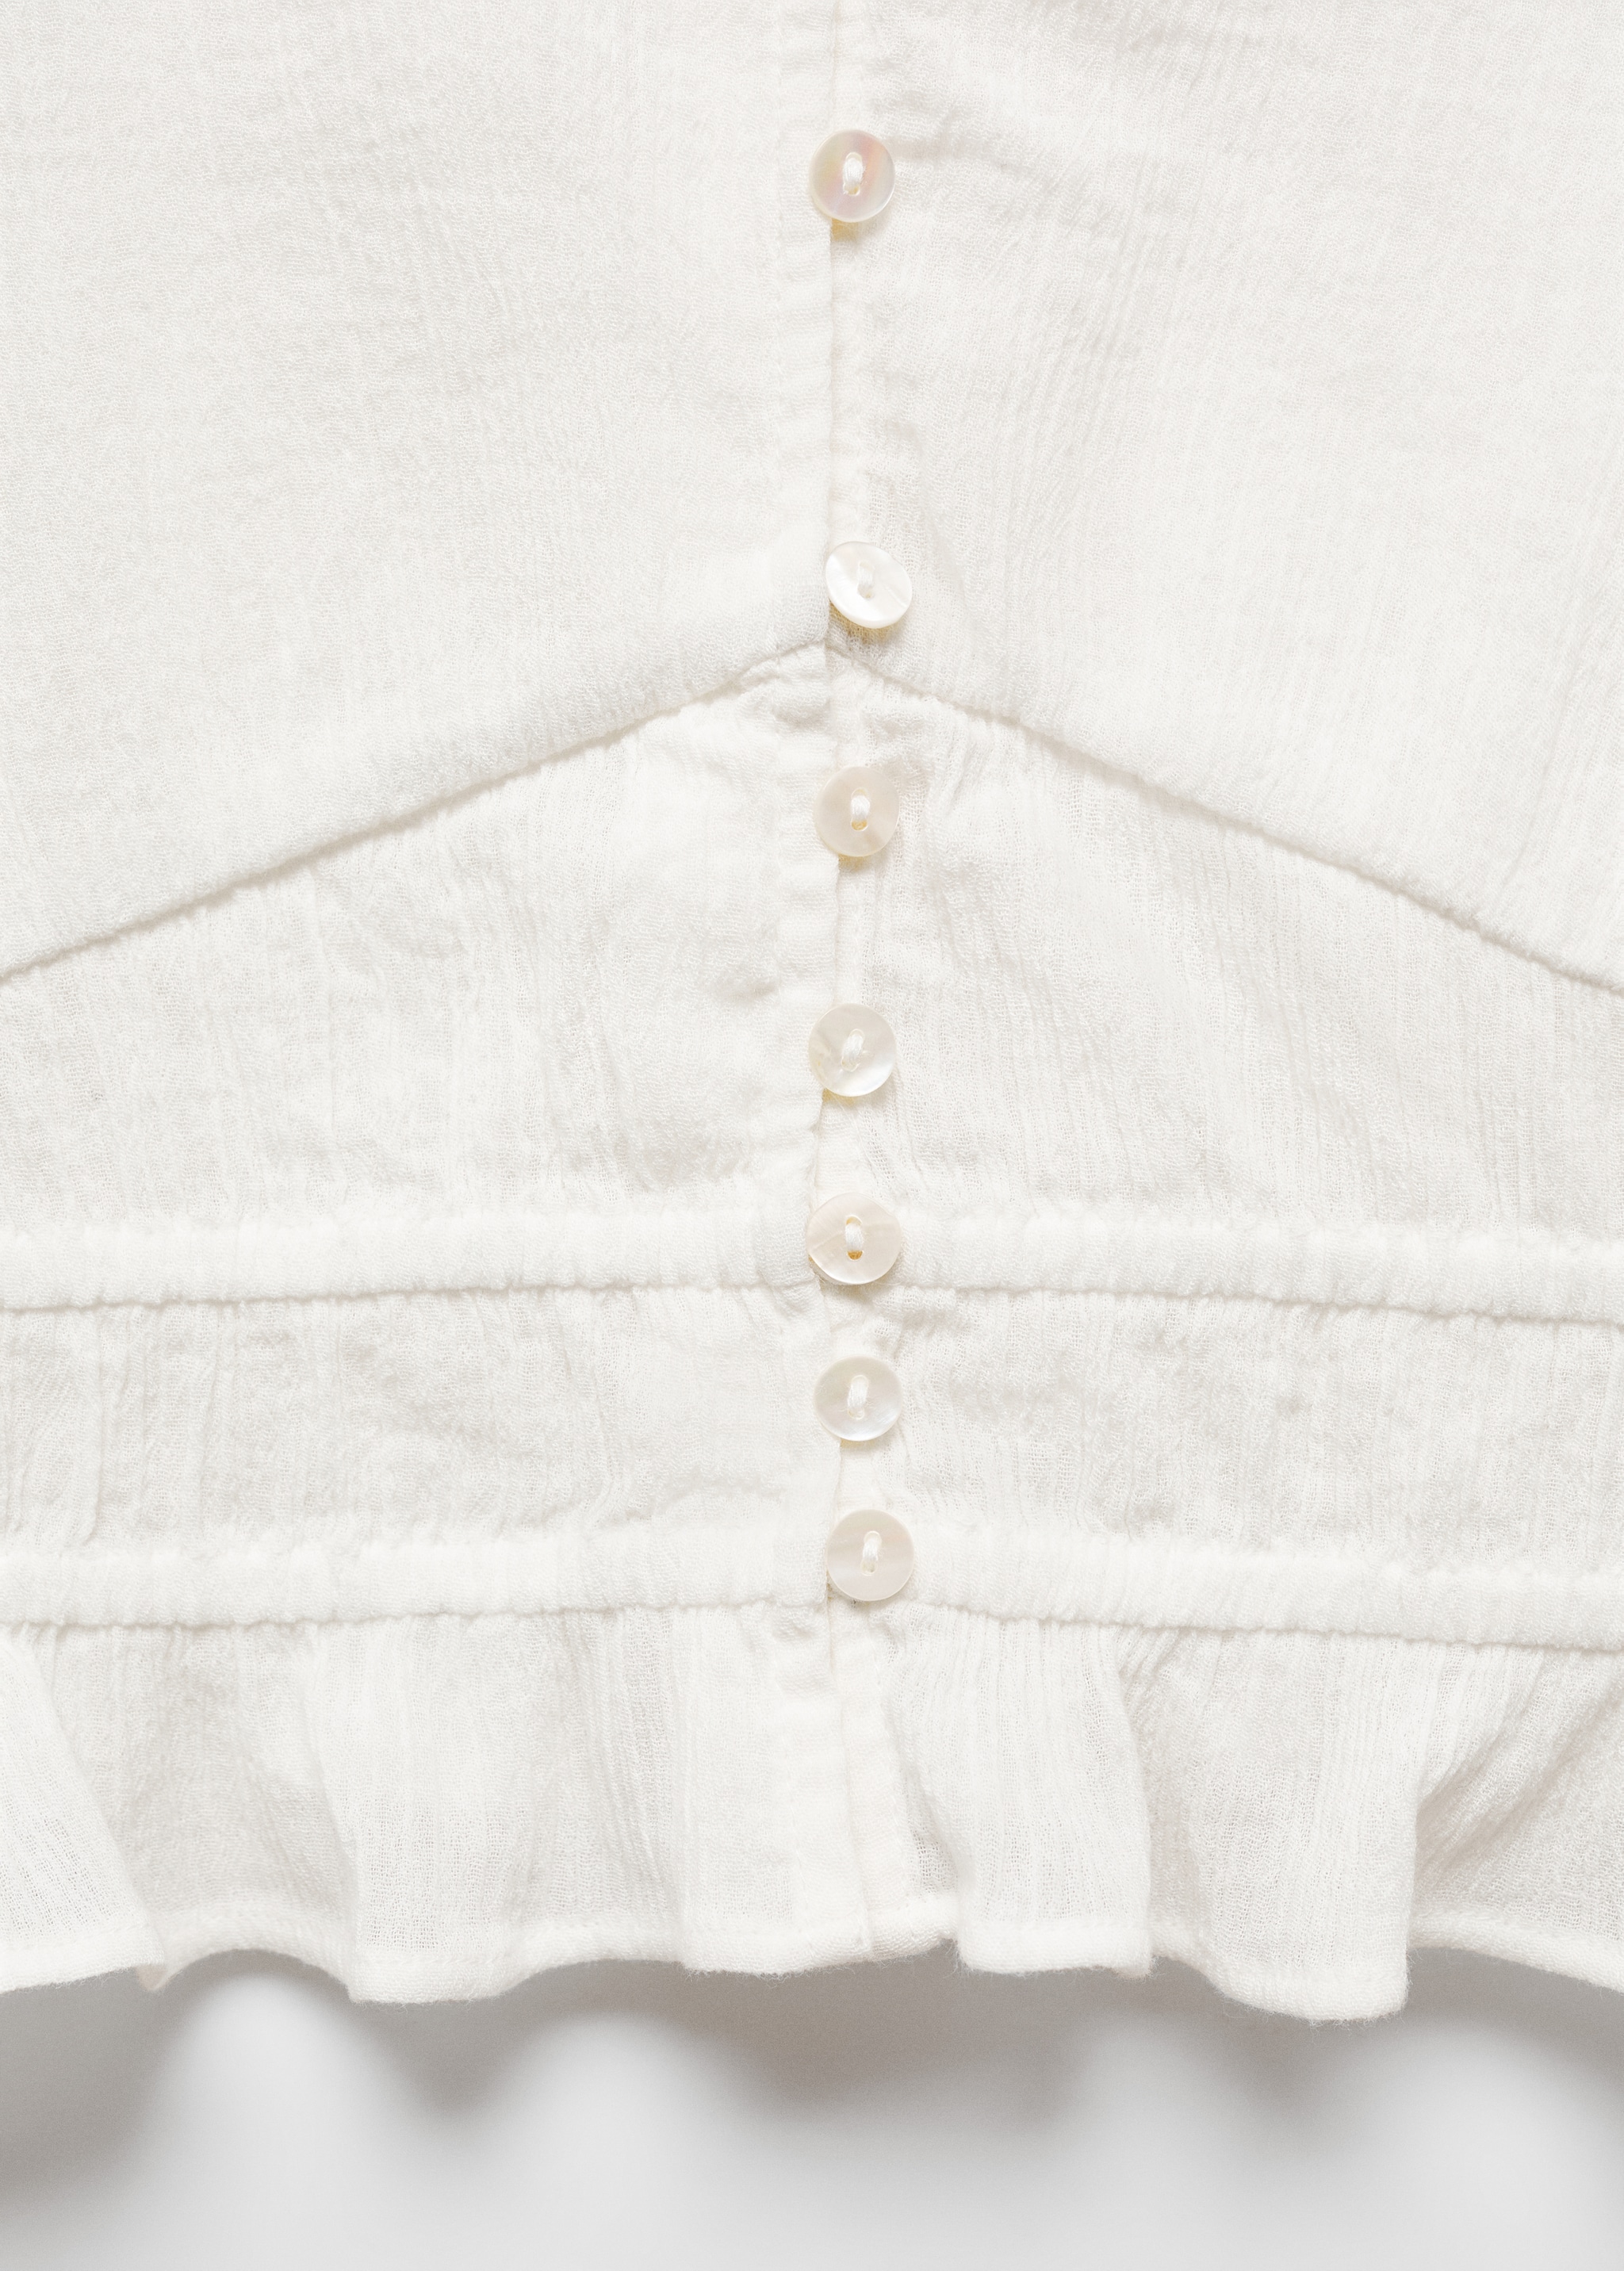 Хлопковая блузка с пуговицами - Деталь изделия 8